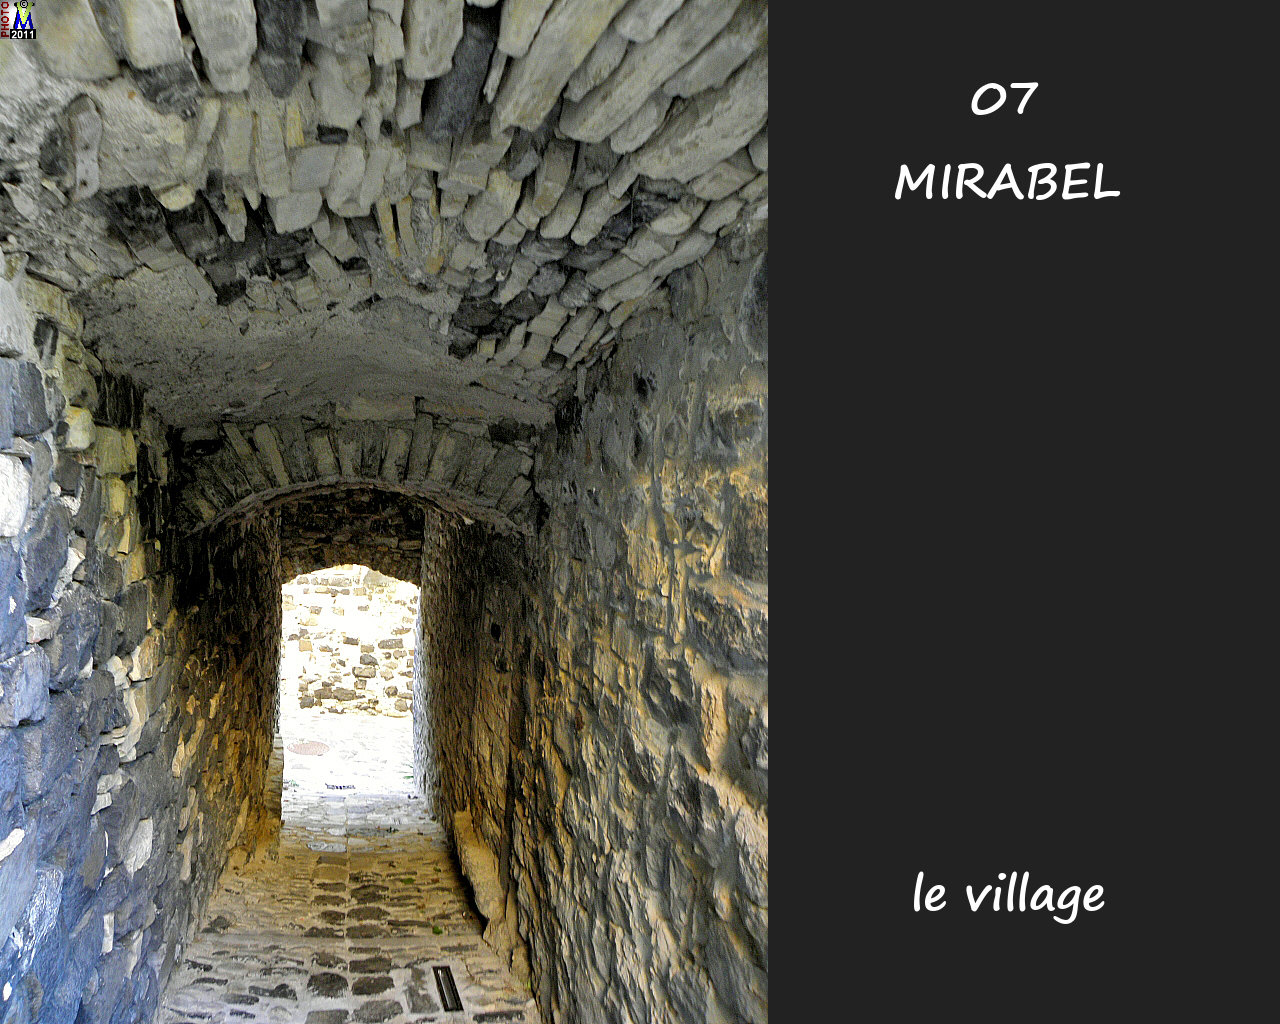 07MIRABEL_village_164.jpg